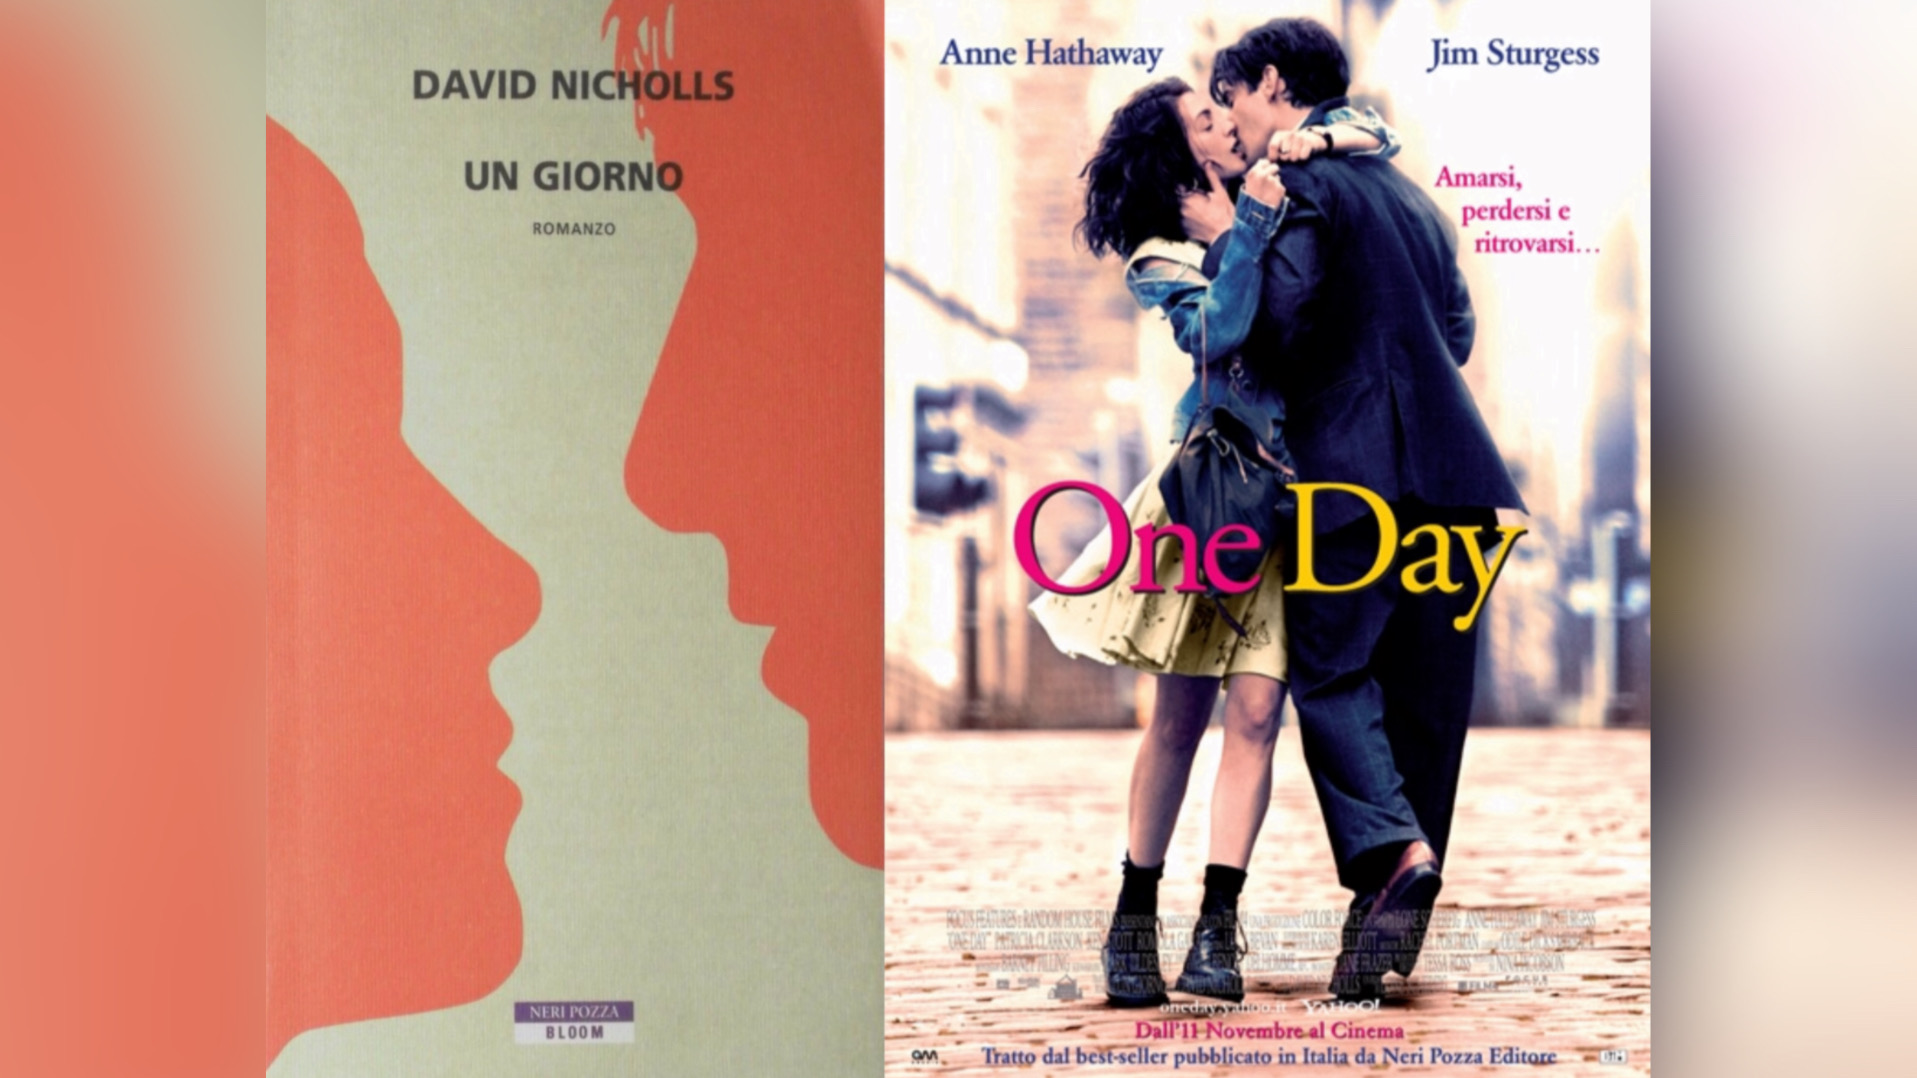 Libri diventati film: Un Giorno di David Nicholls